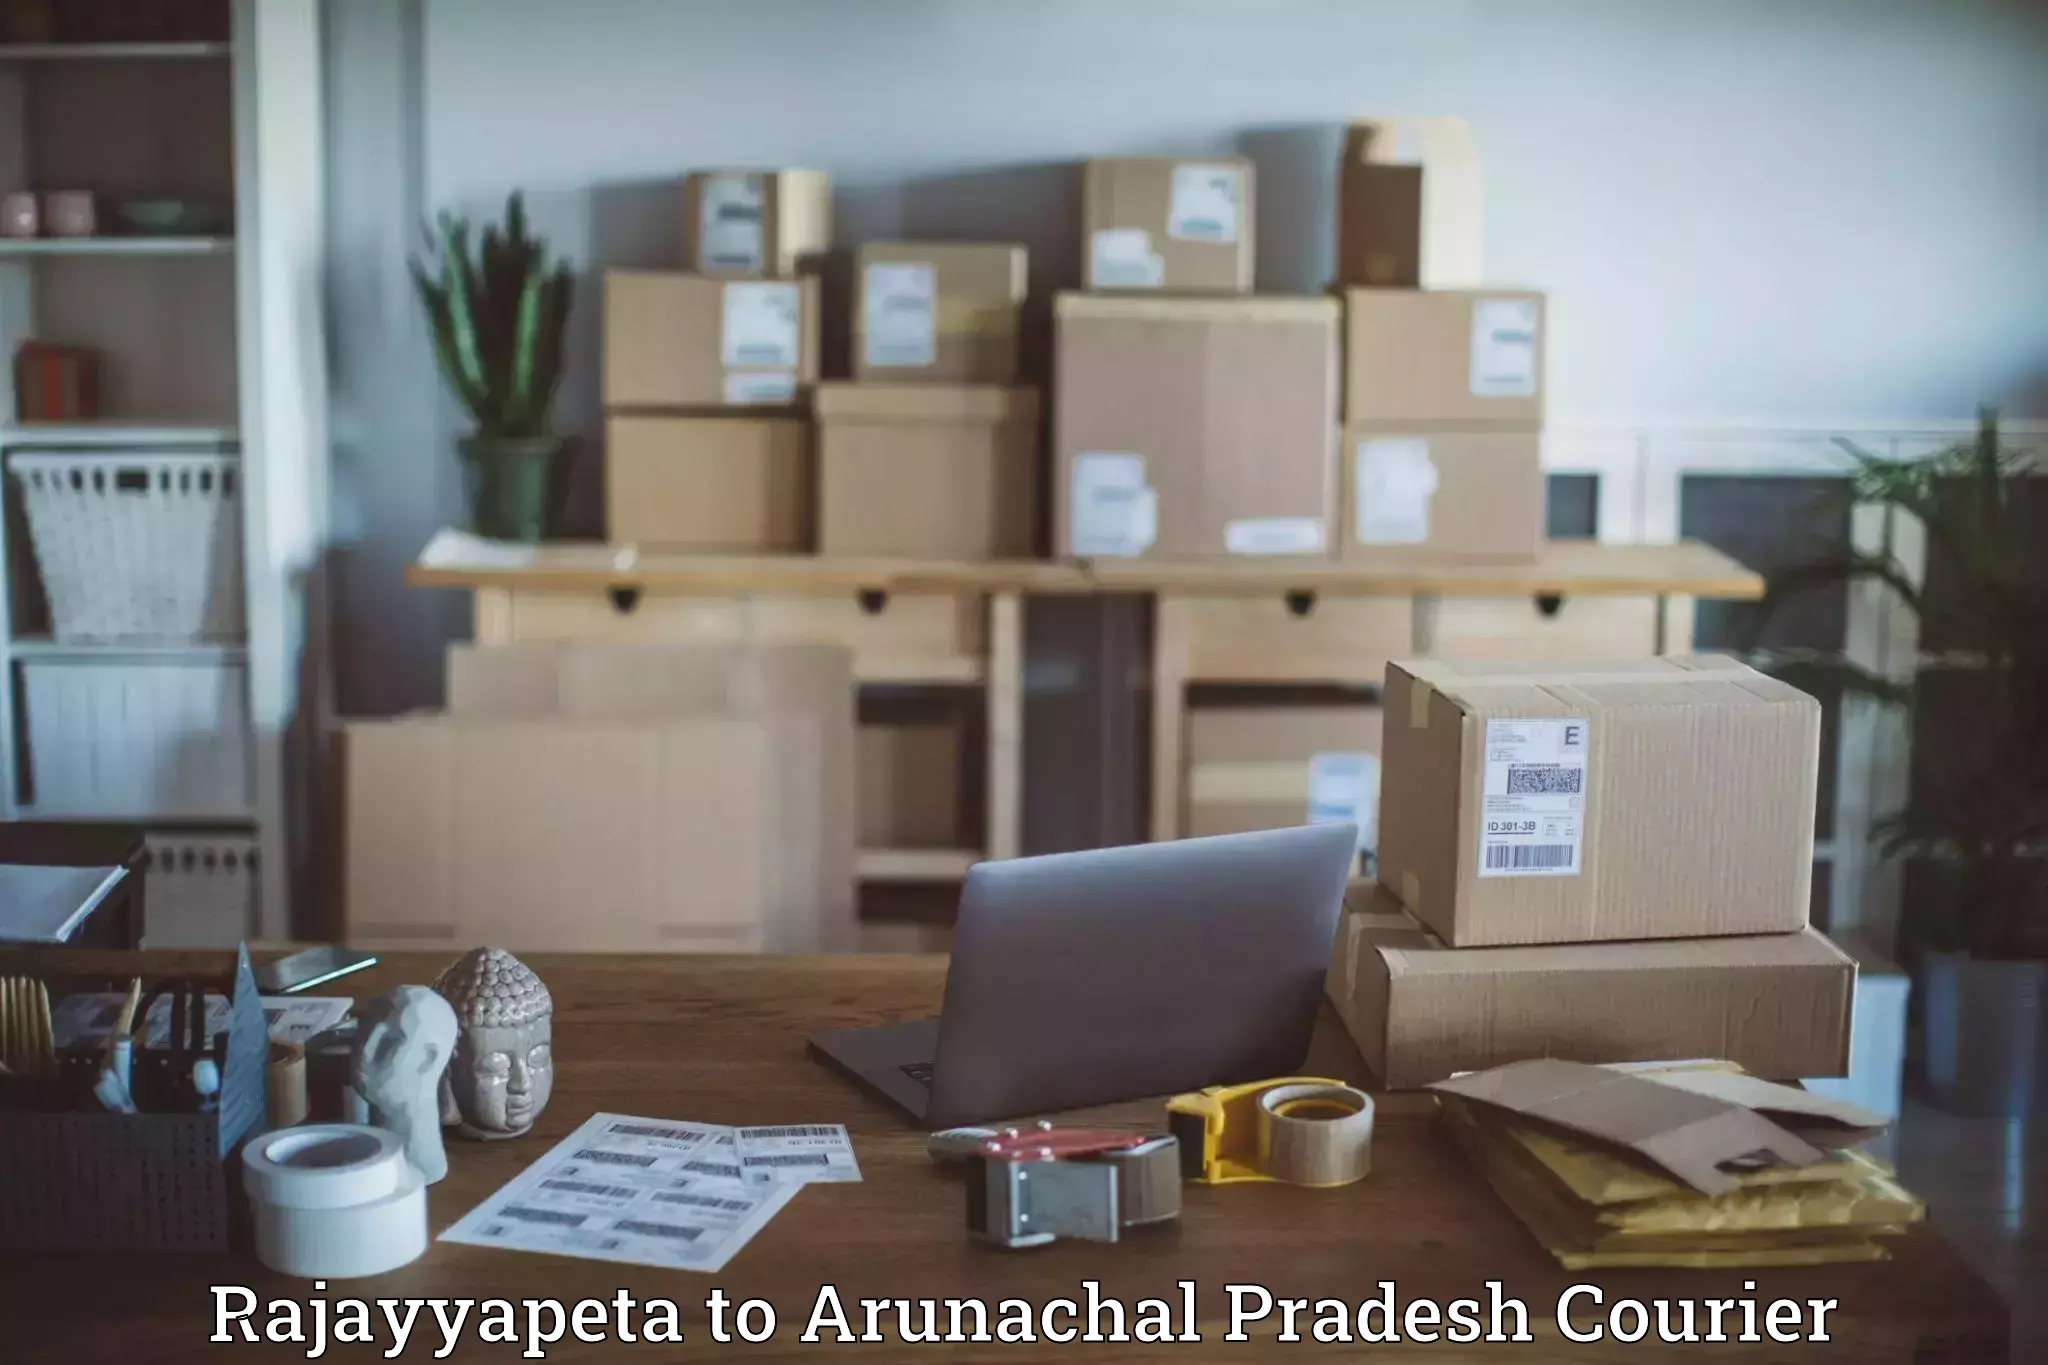 Urgent courier needs Rajayyapeta to Nirjuli